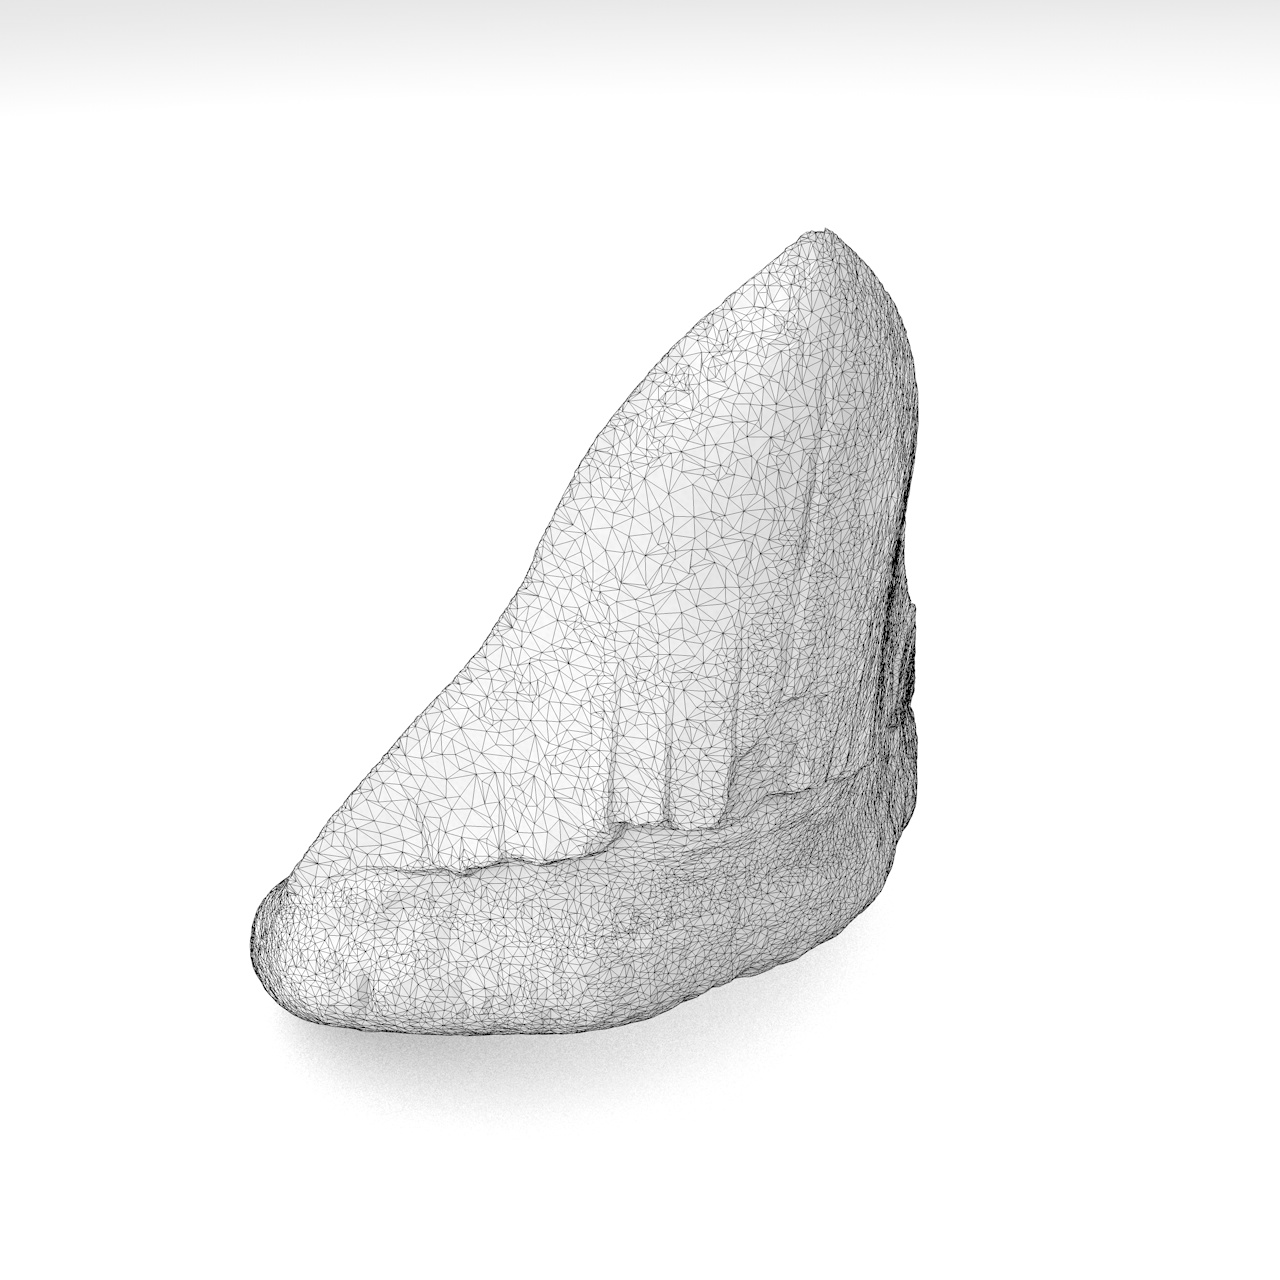 مدل چاپ سه بعدی دندان کوسه Megalodon